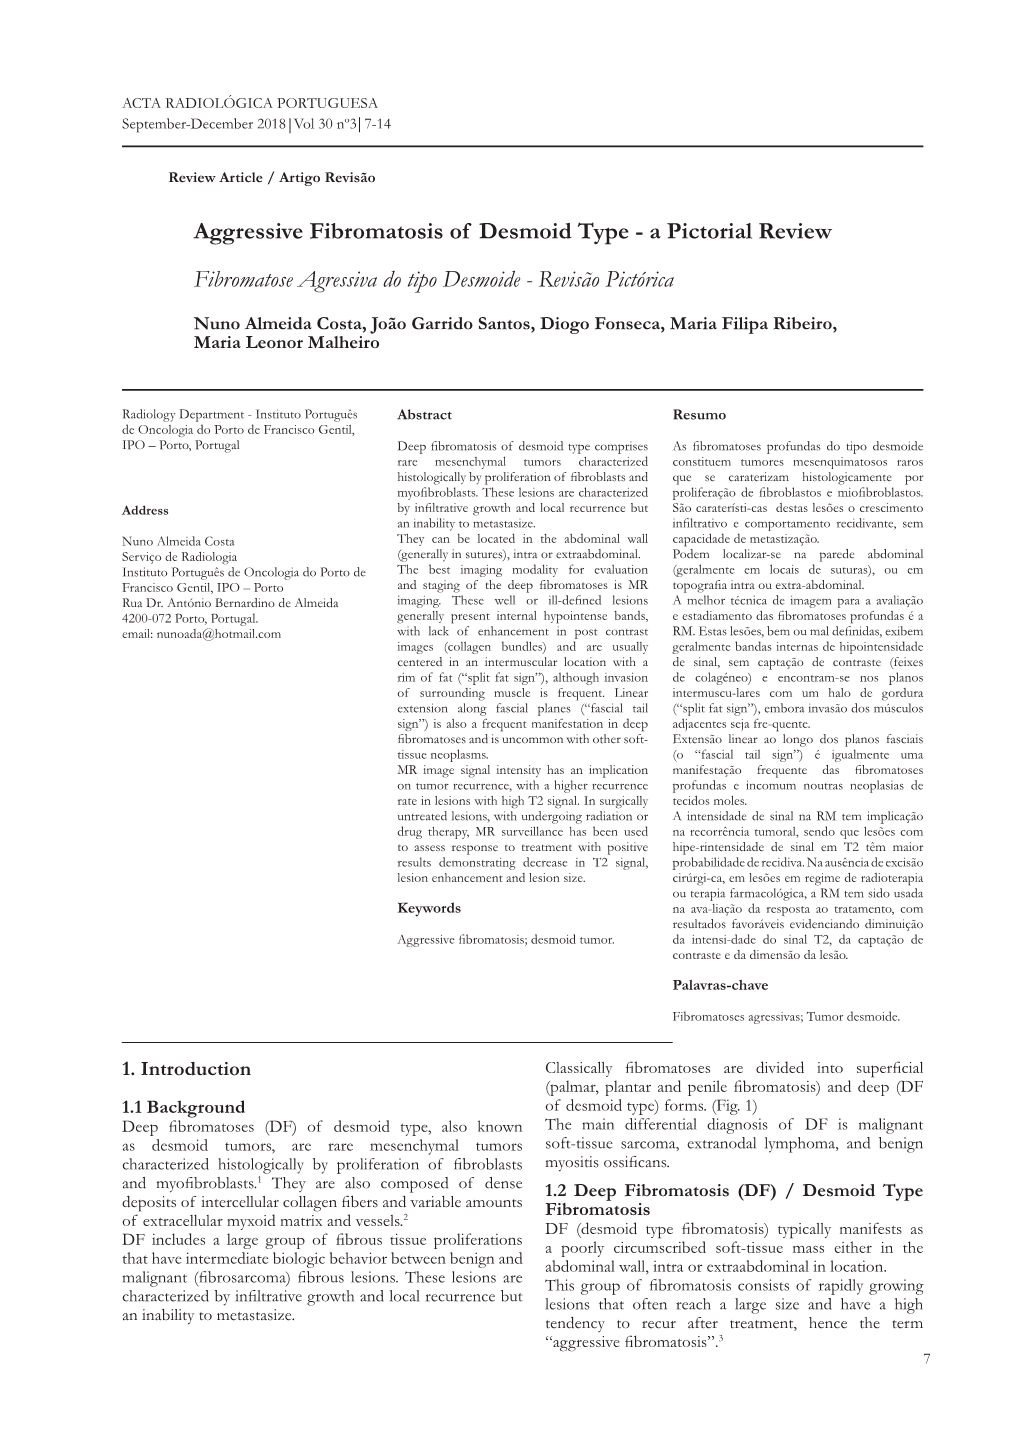 Aggressive Fibromatosis of Desmoid Type - a Pictorial Review Fibromatose Agressiva Do Tipo Desmoide - Revisão Pictórica